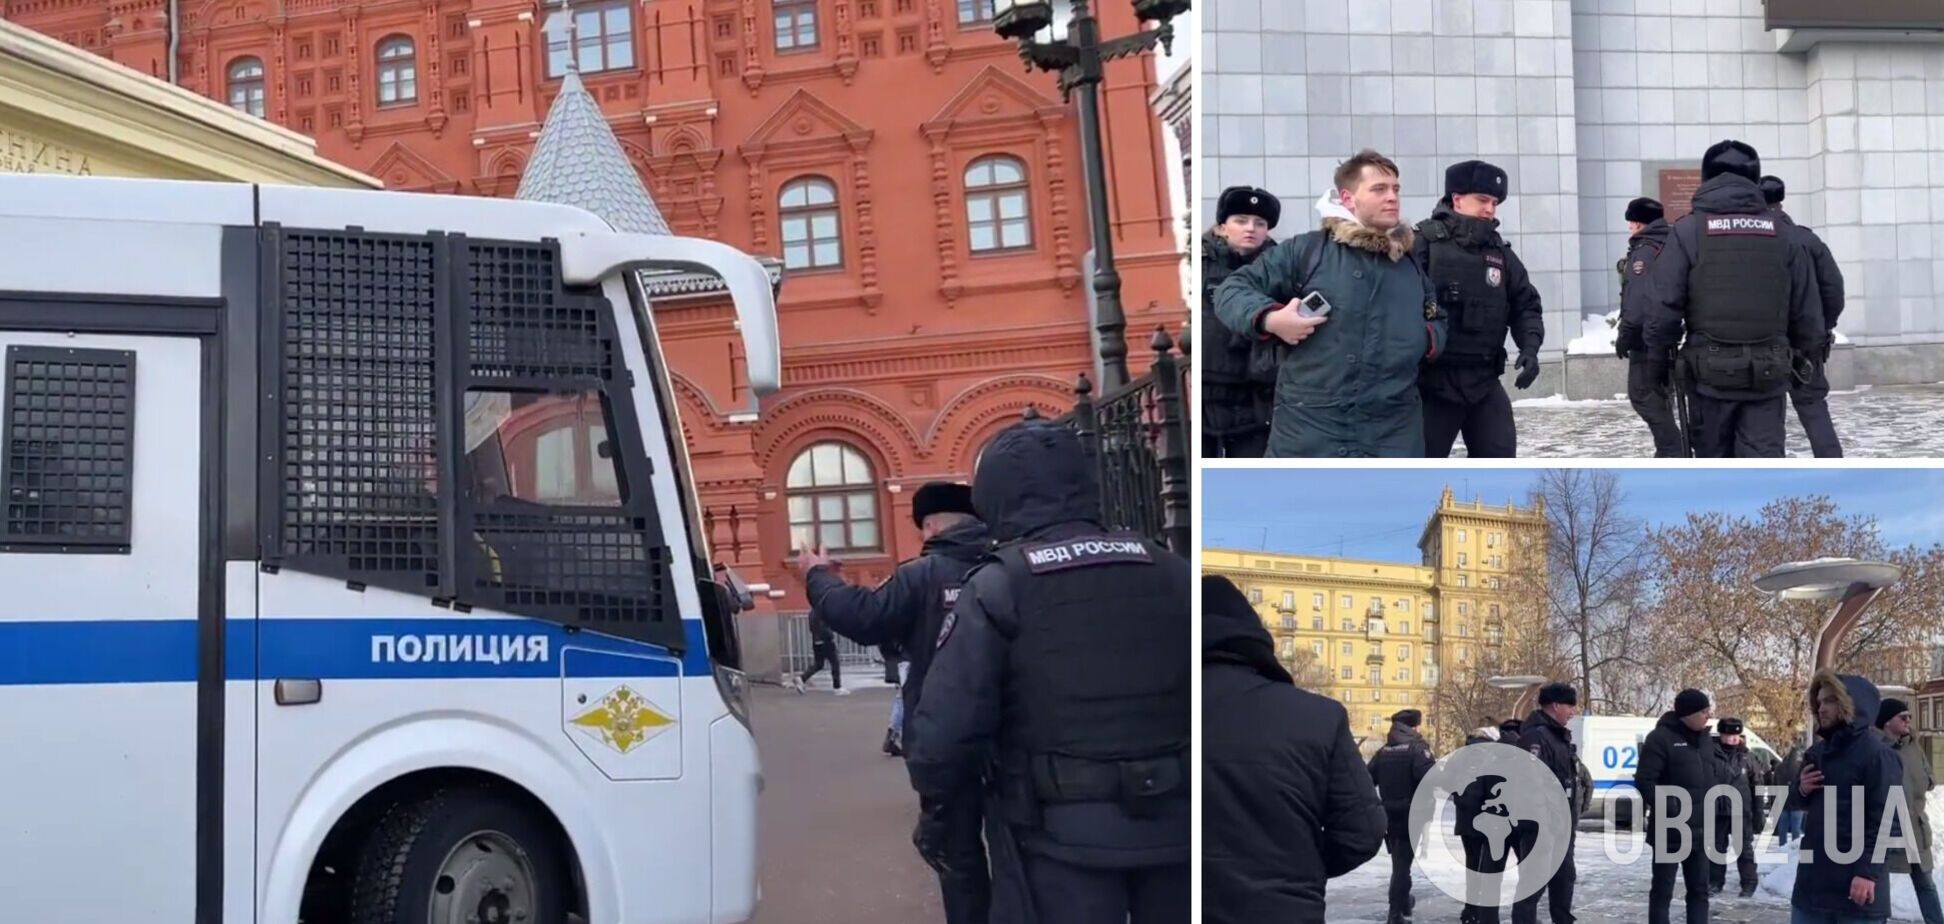 В центре Москвы прошел митинг против мобилизации: полиция задержала более 30 человек. Фото и видео